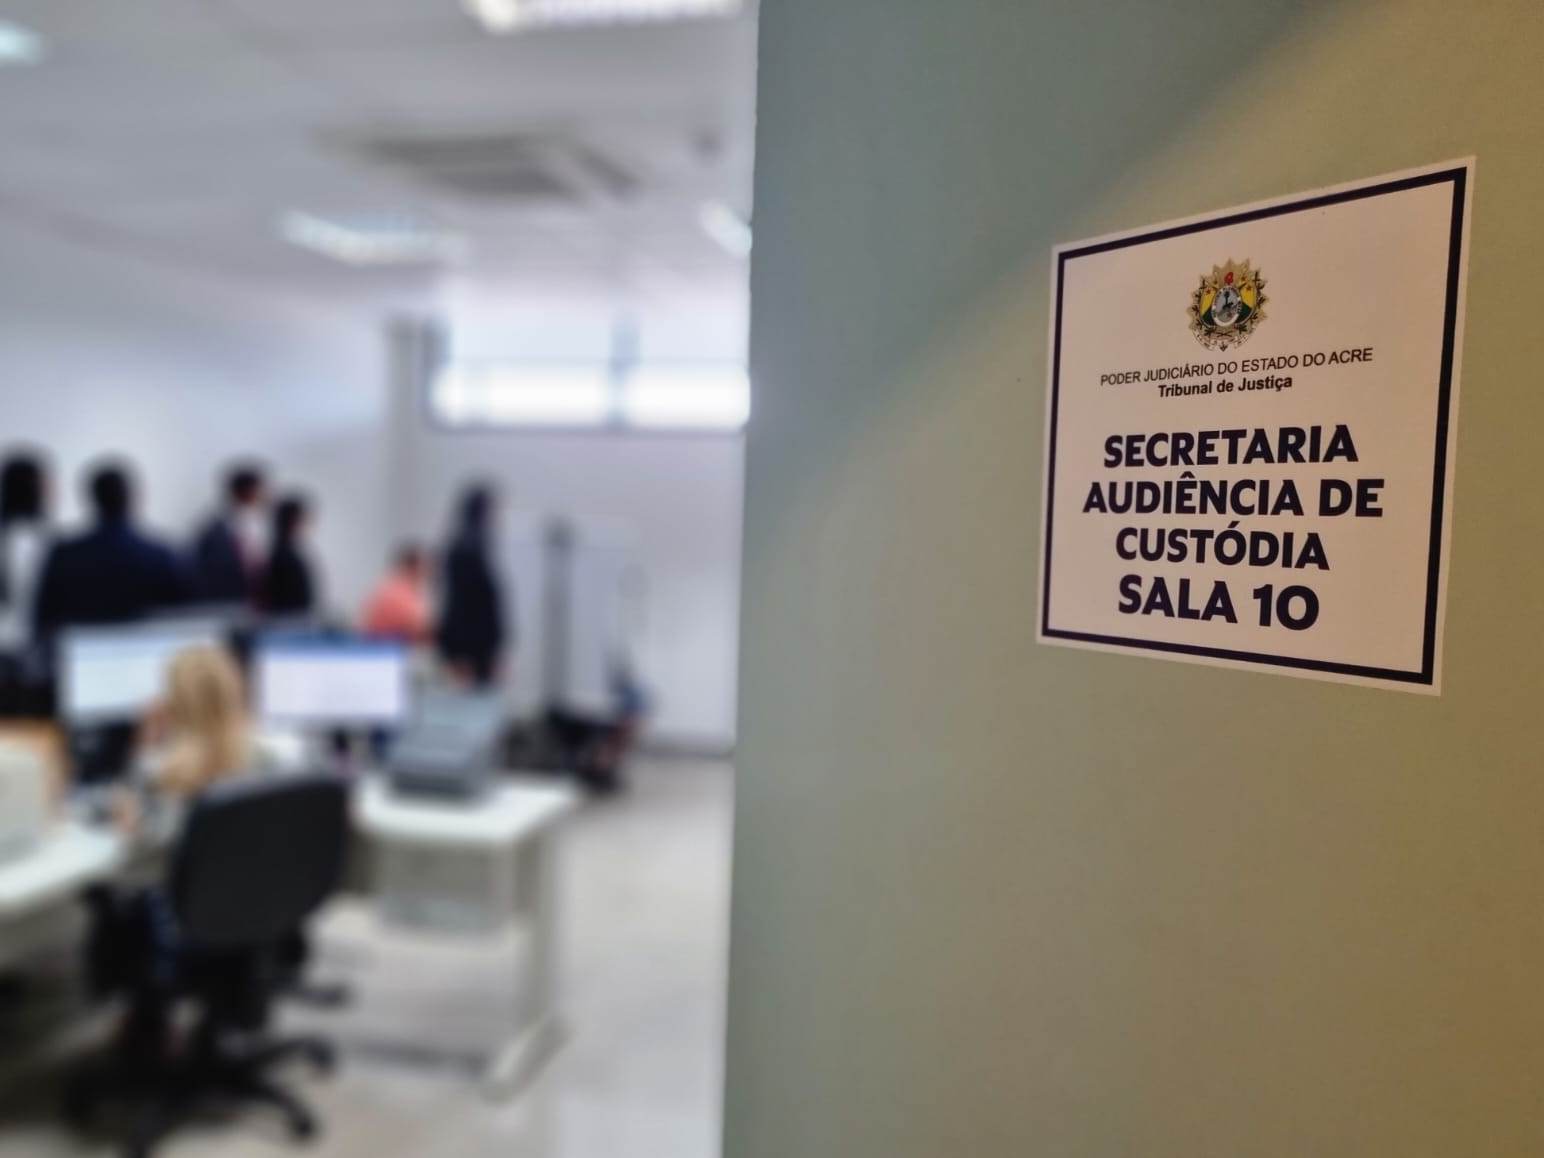 Foto da porta da sala com a placa indicando o local para fazer a biometria das pessoas detidas